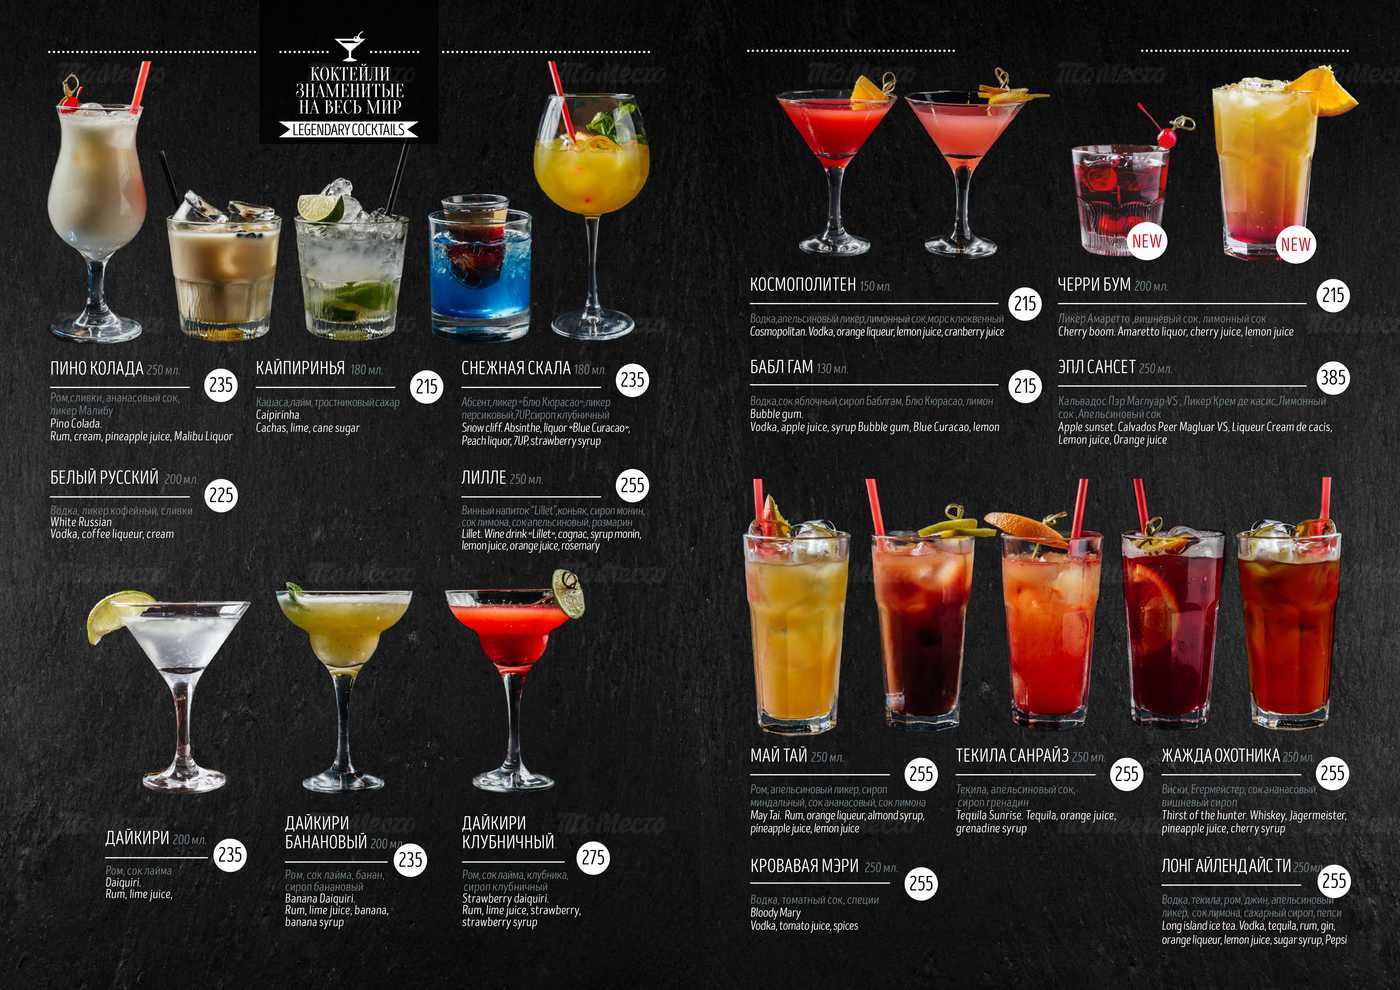 Коктейль зомби: состав, проверенный рецепт, пропорции. топ-5 лучших фото американского напитка!